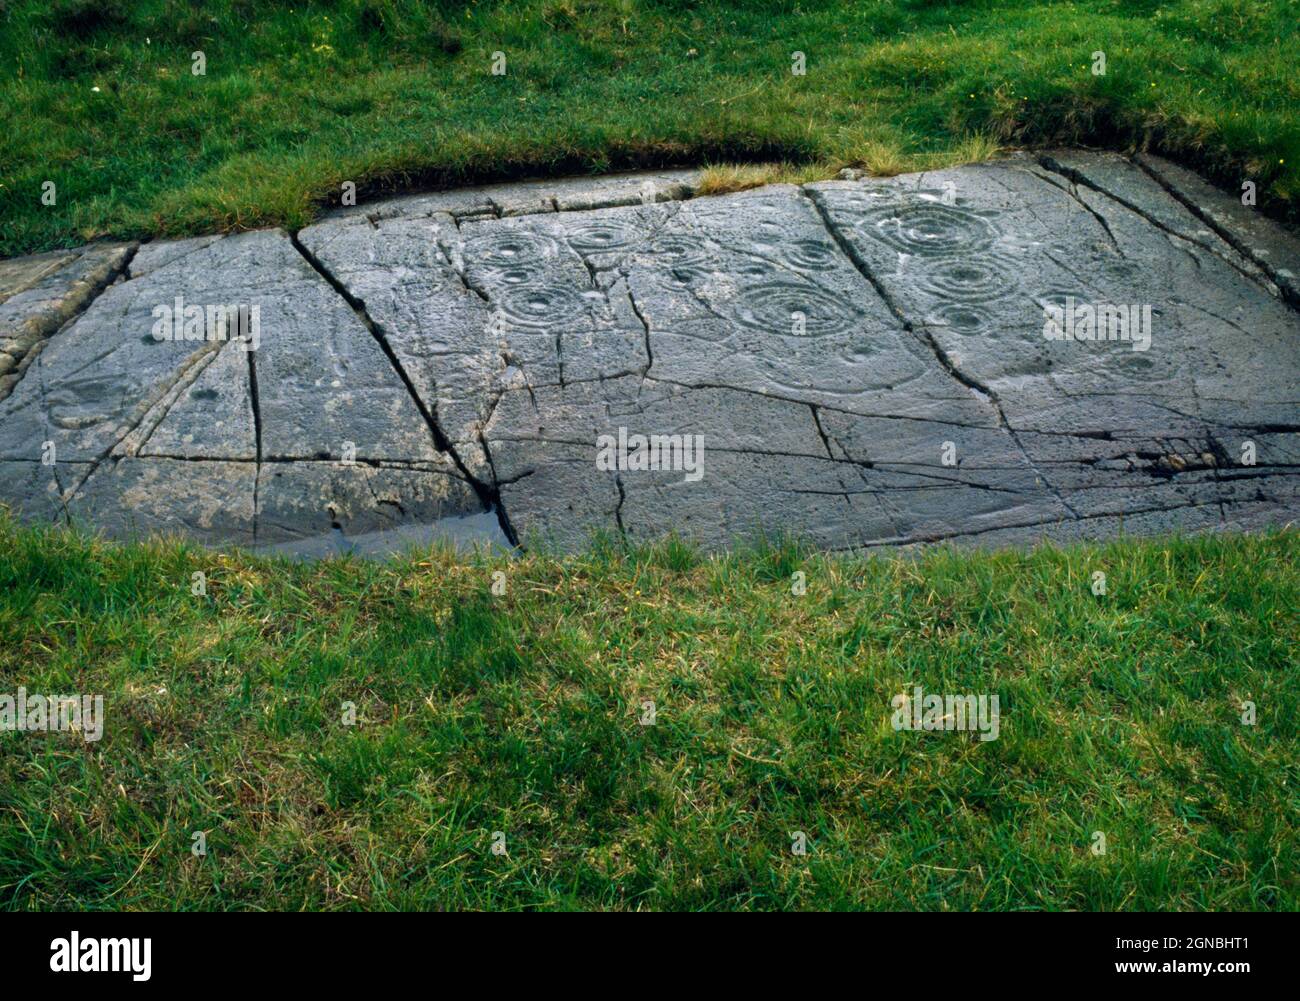 Vedi S of Cairnbaan (2) arte rupestre preistorica, Argyll, Scozia, Regno Unito, che mostra tazze e tazze semplici con anelli concentrici multipli (alcuni attutendo). Foto Stock